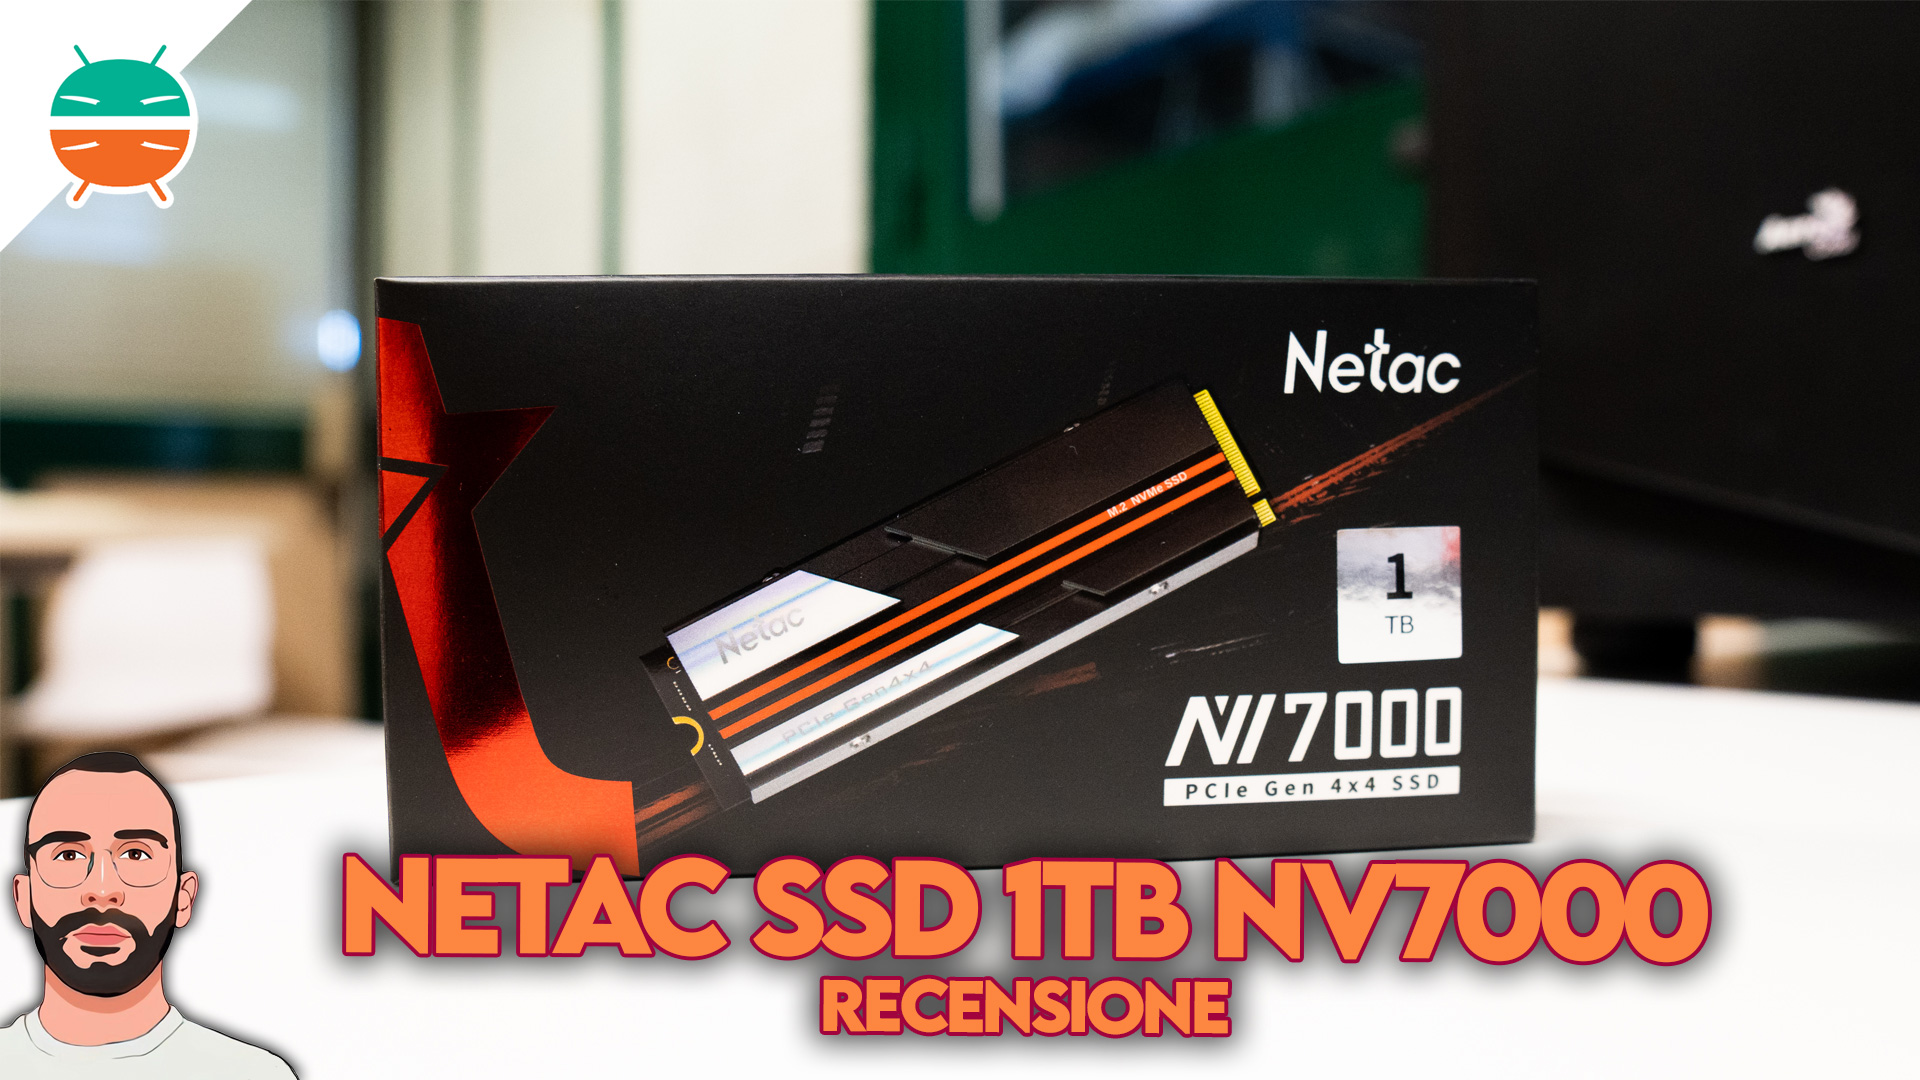 Netac-Disque dur interne SSD avec dissipateur thermique pour PS5